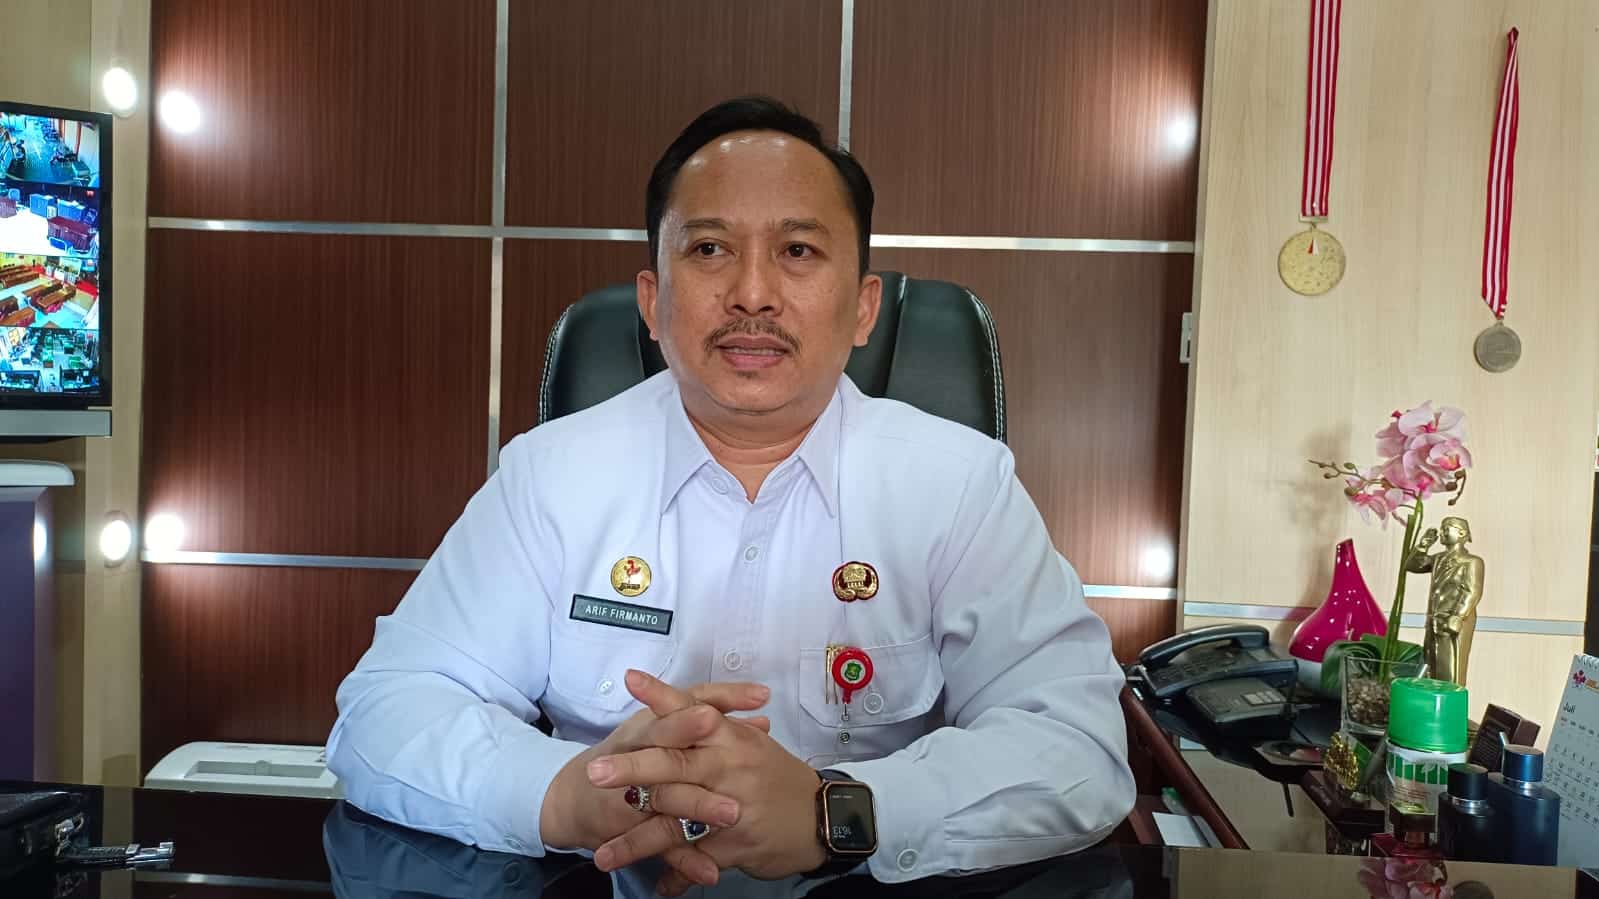 Arif Firmanto, Kepala Dinas Ketahanan Pangan dan Pertanian Kabupaten Sumenep.